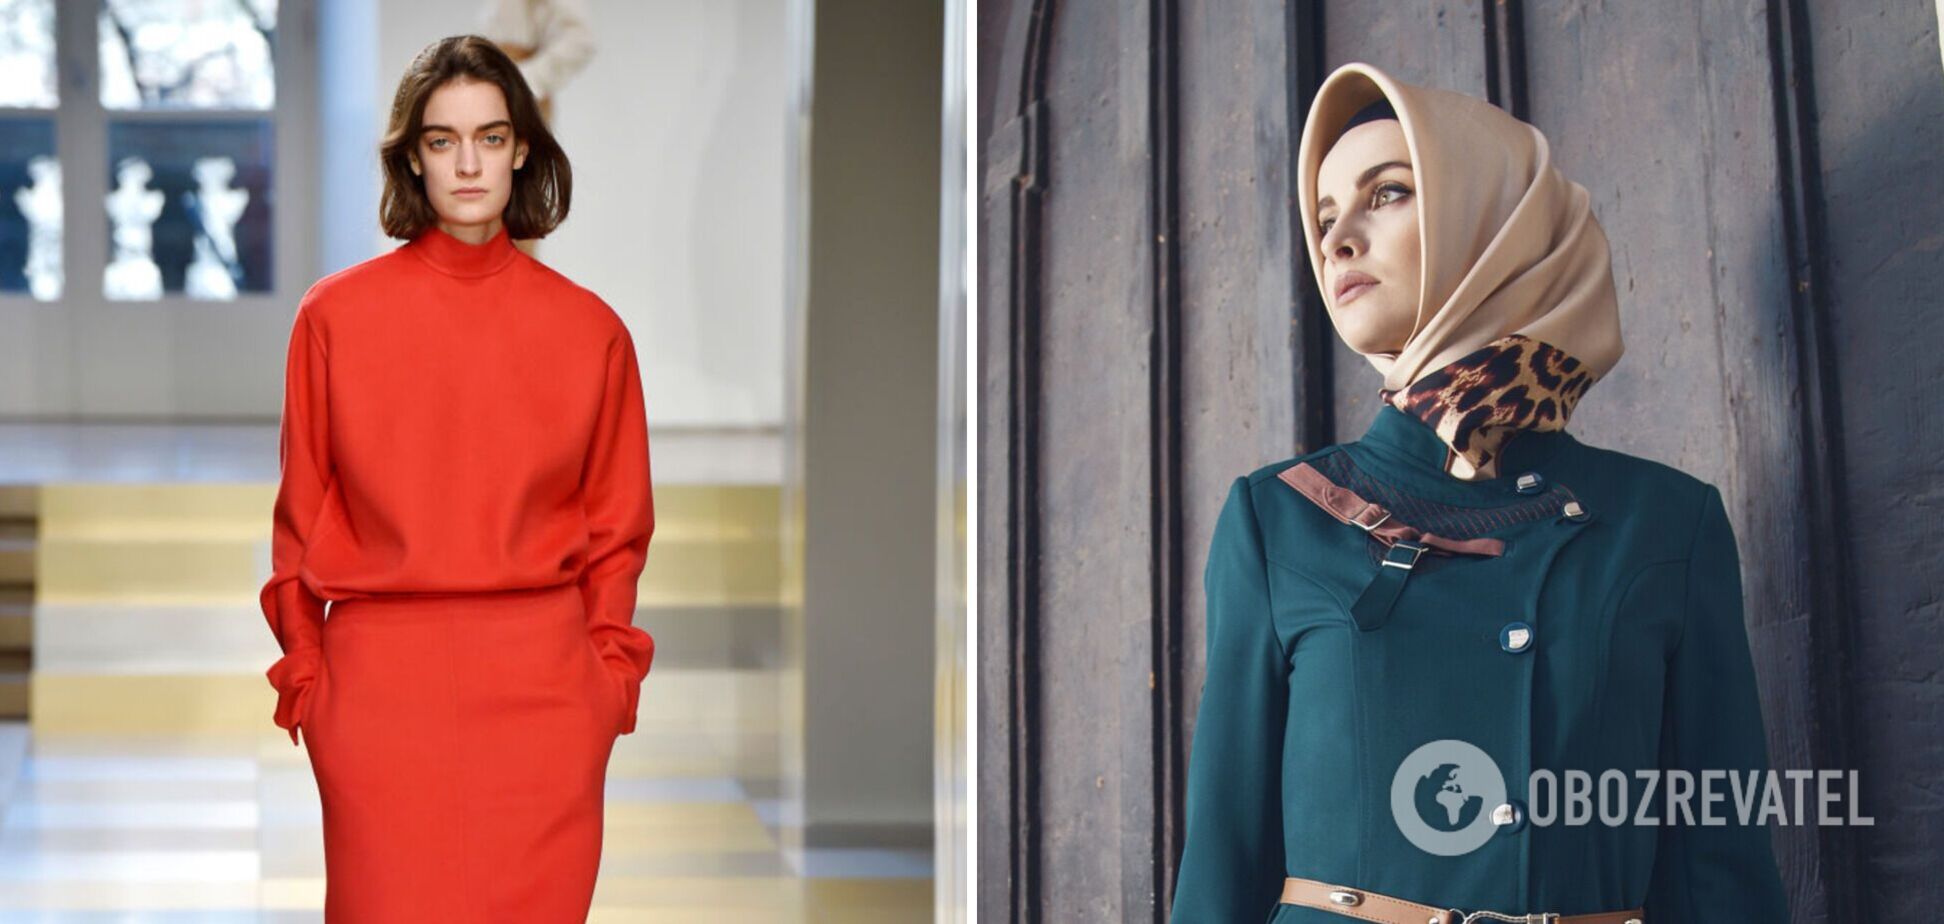 'Мода для скромных': как мусульманки повлияли на тренды в одежде. Фото